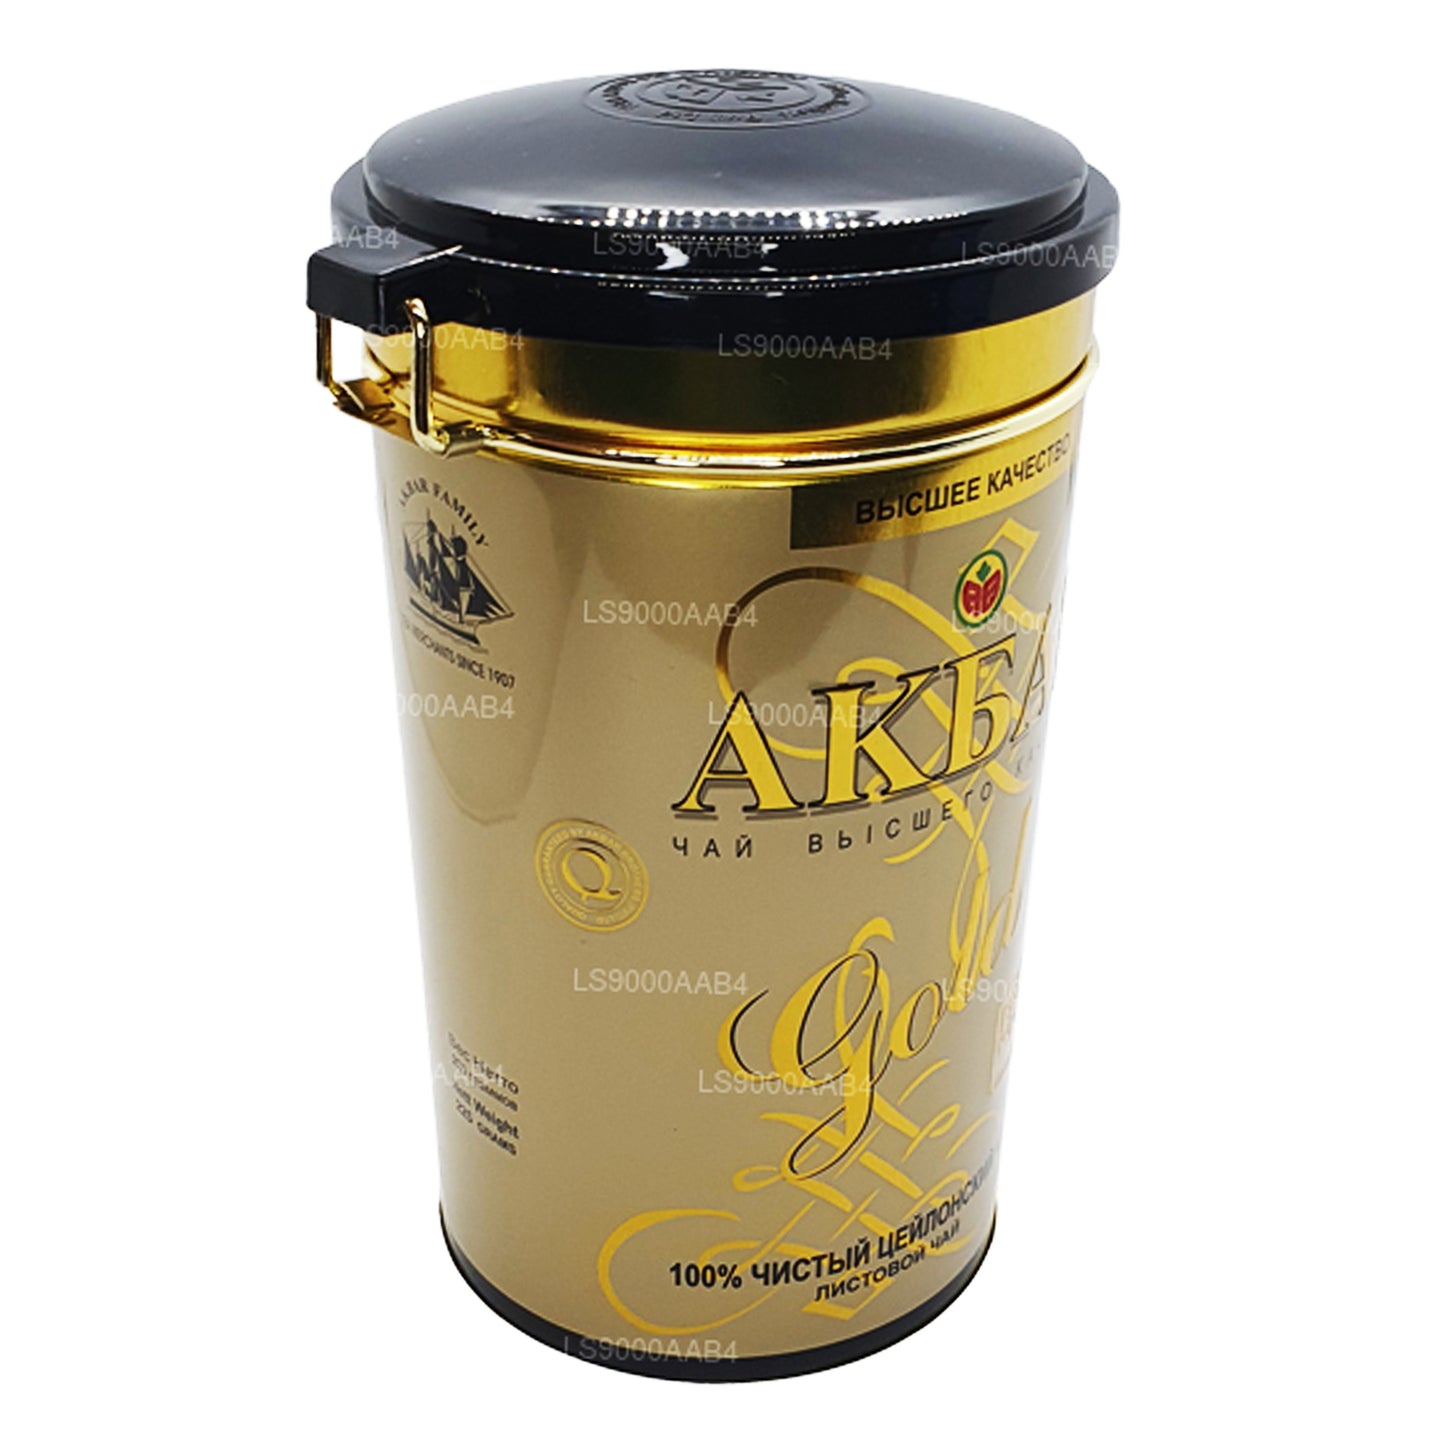 Akbar Altın Yaprak Çay (225g)